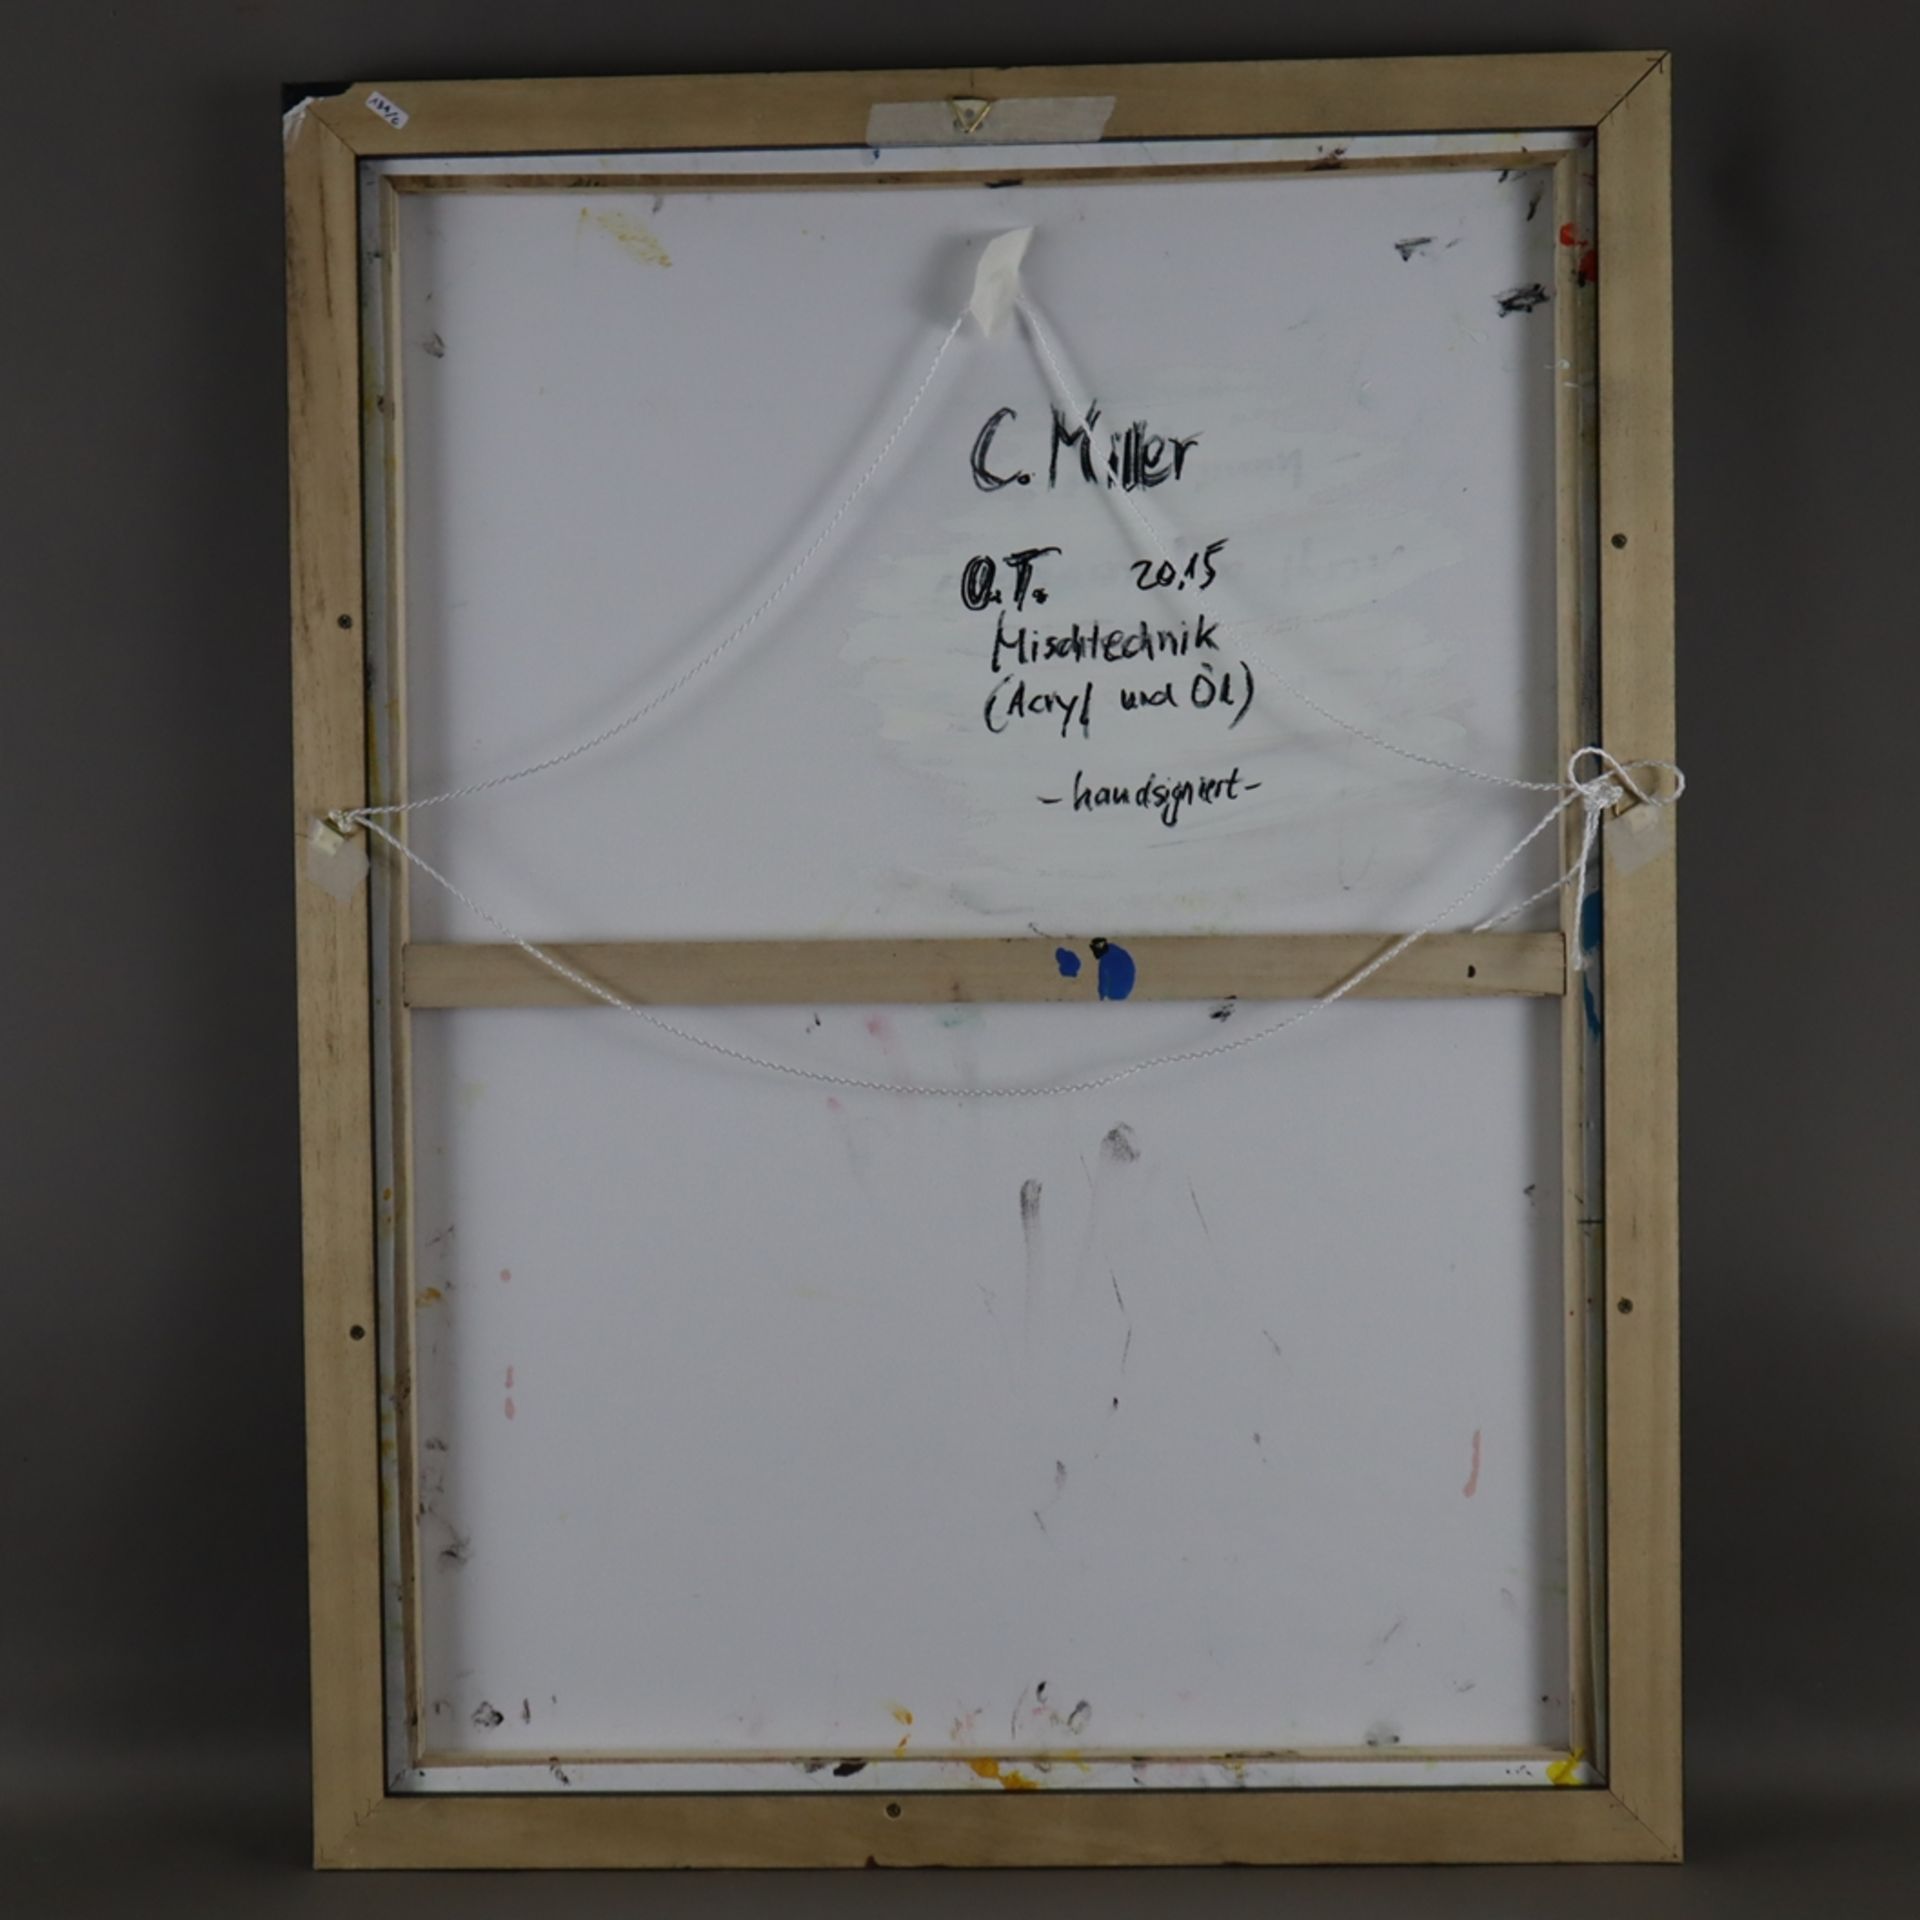 C. Miller - Ohne Titel, Acryl/Öl auf Leinwand, unten rechts signiert, gerahmt, ca.65x85cm - Image 5 of 5